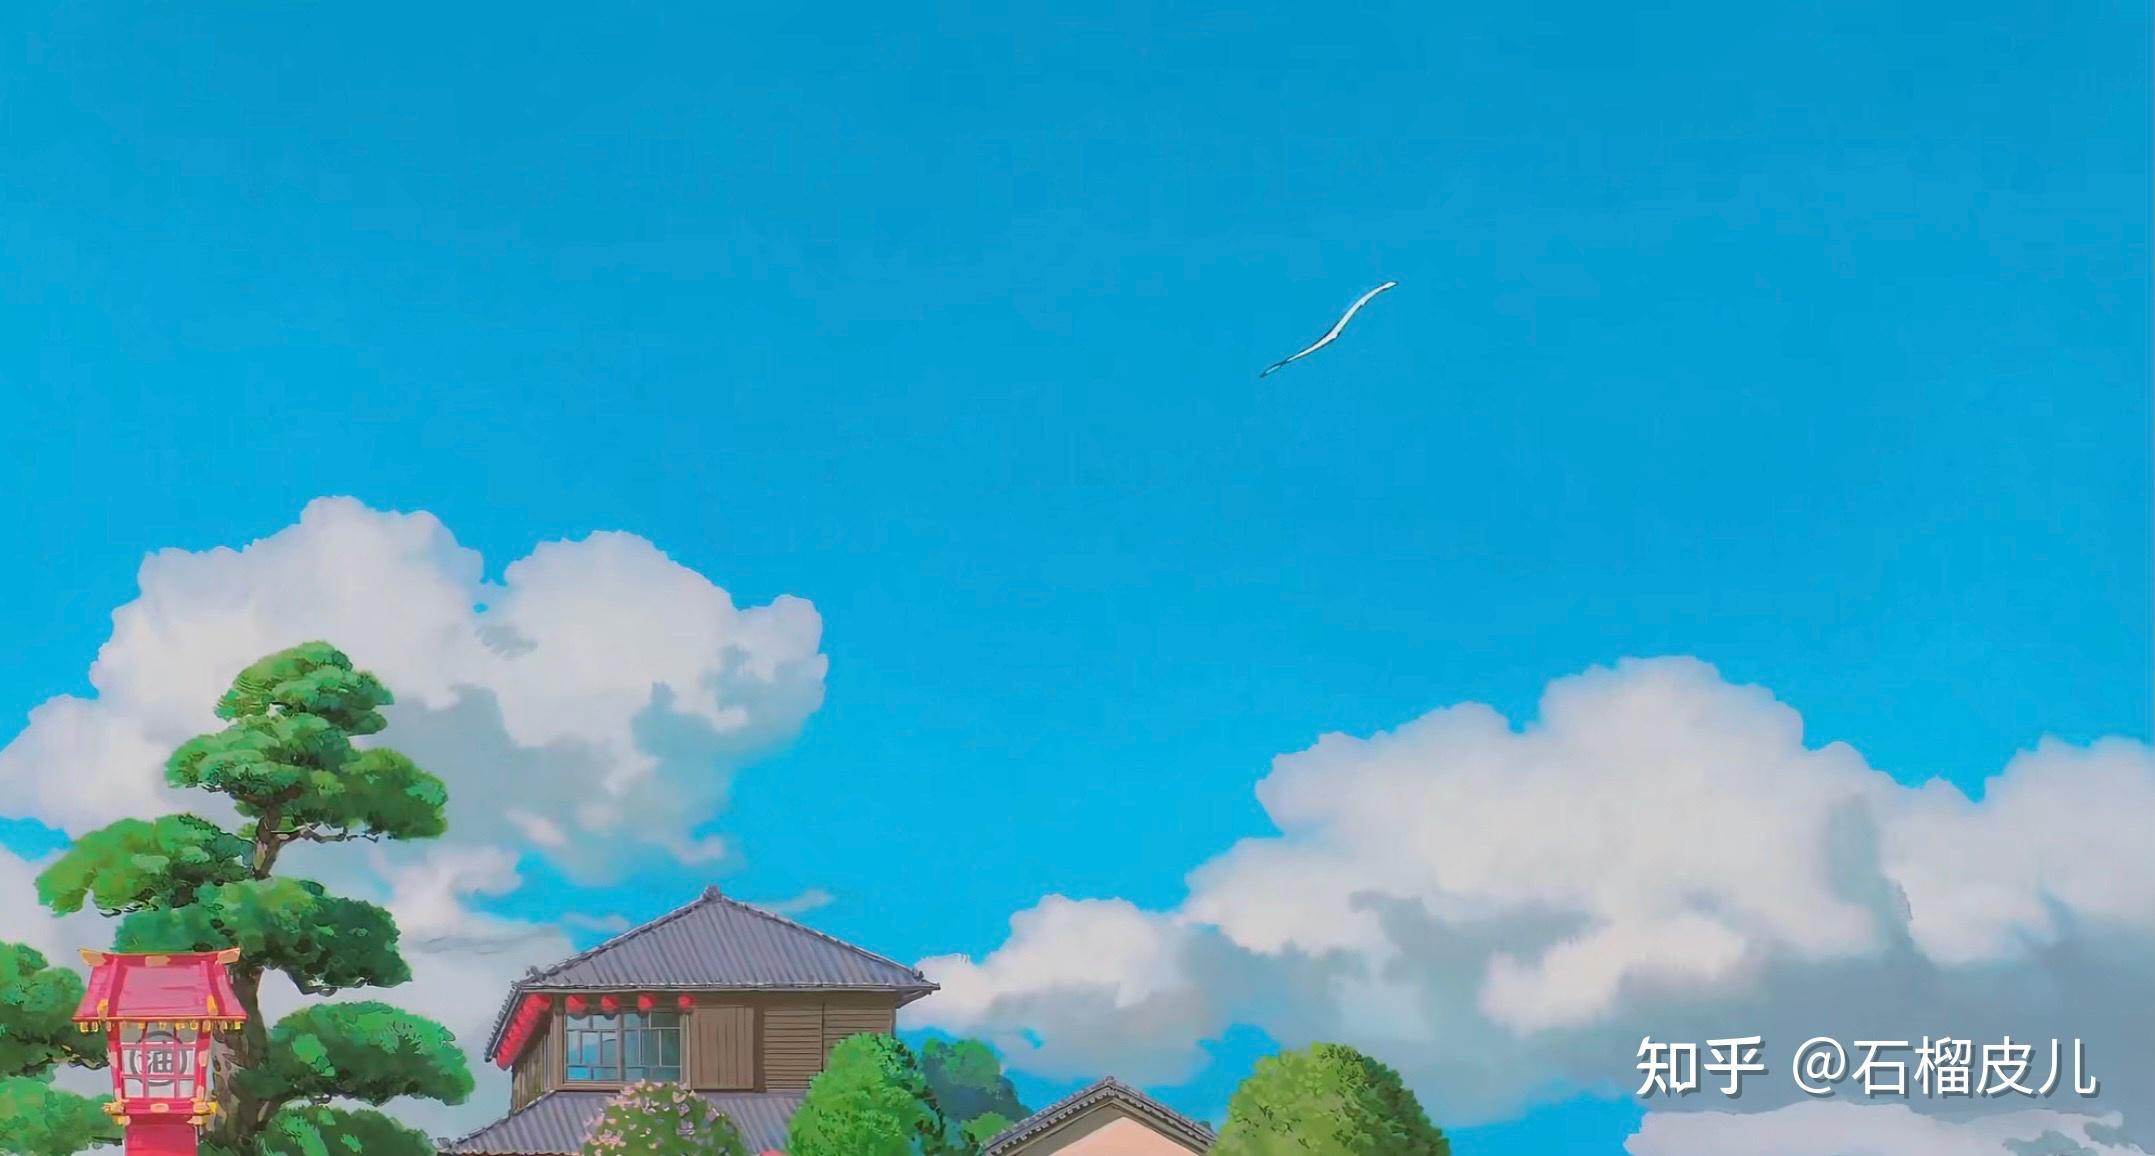 宫崎骏动画壁纸 - 主题美化 花粉俱乐部